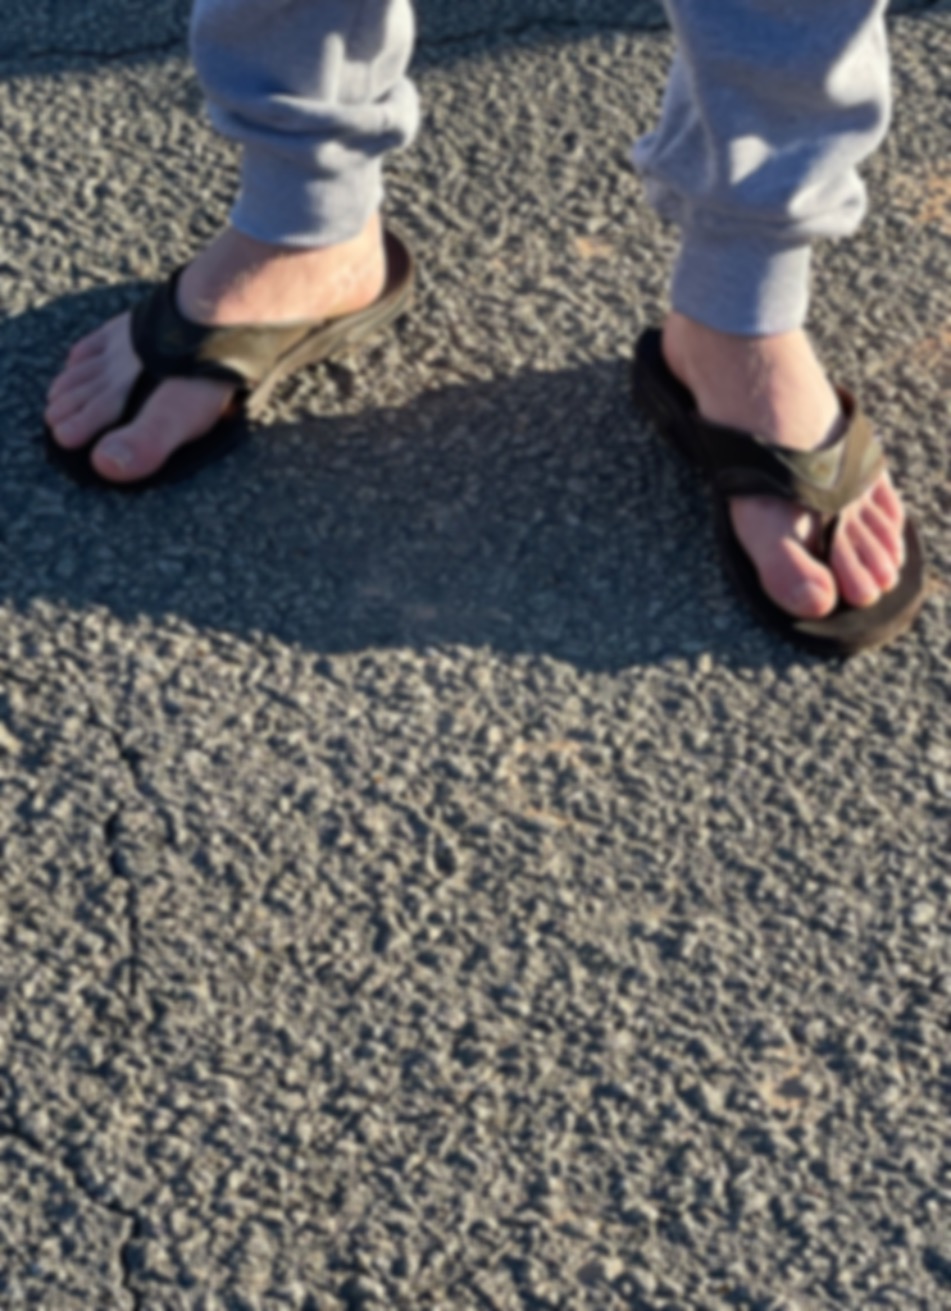 Twunk jock feet in gray sweatpants